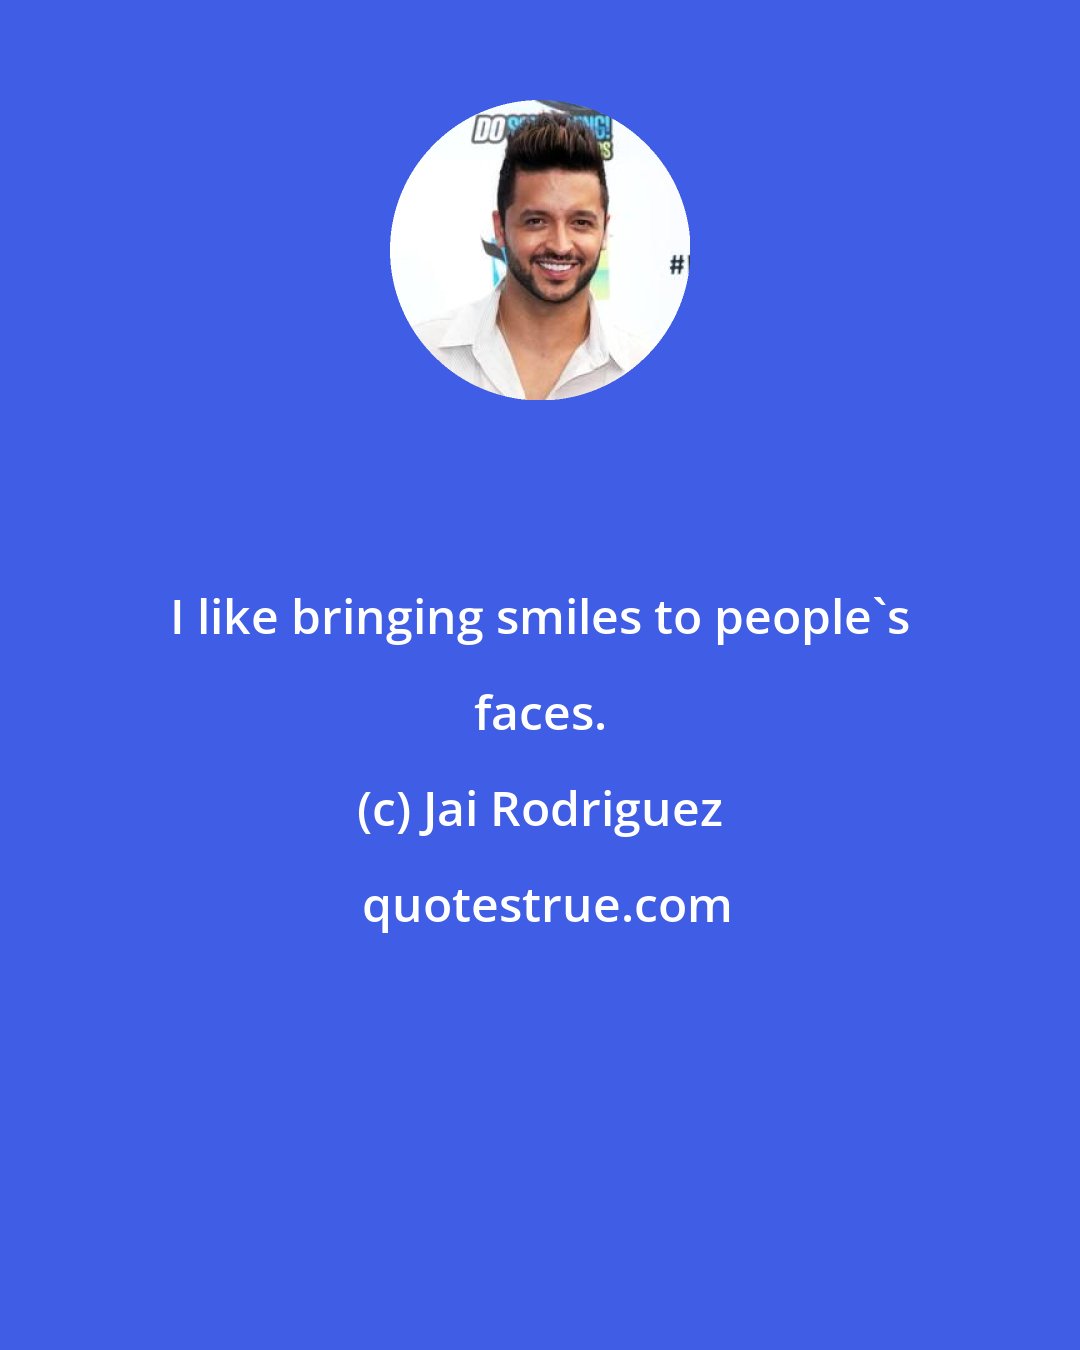 Jai Rodriguez: I like bringing smiles to people's faces.